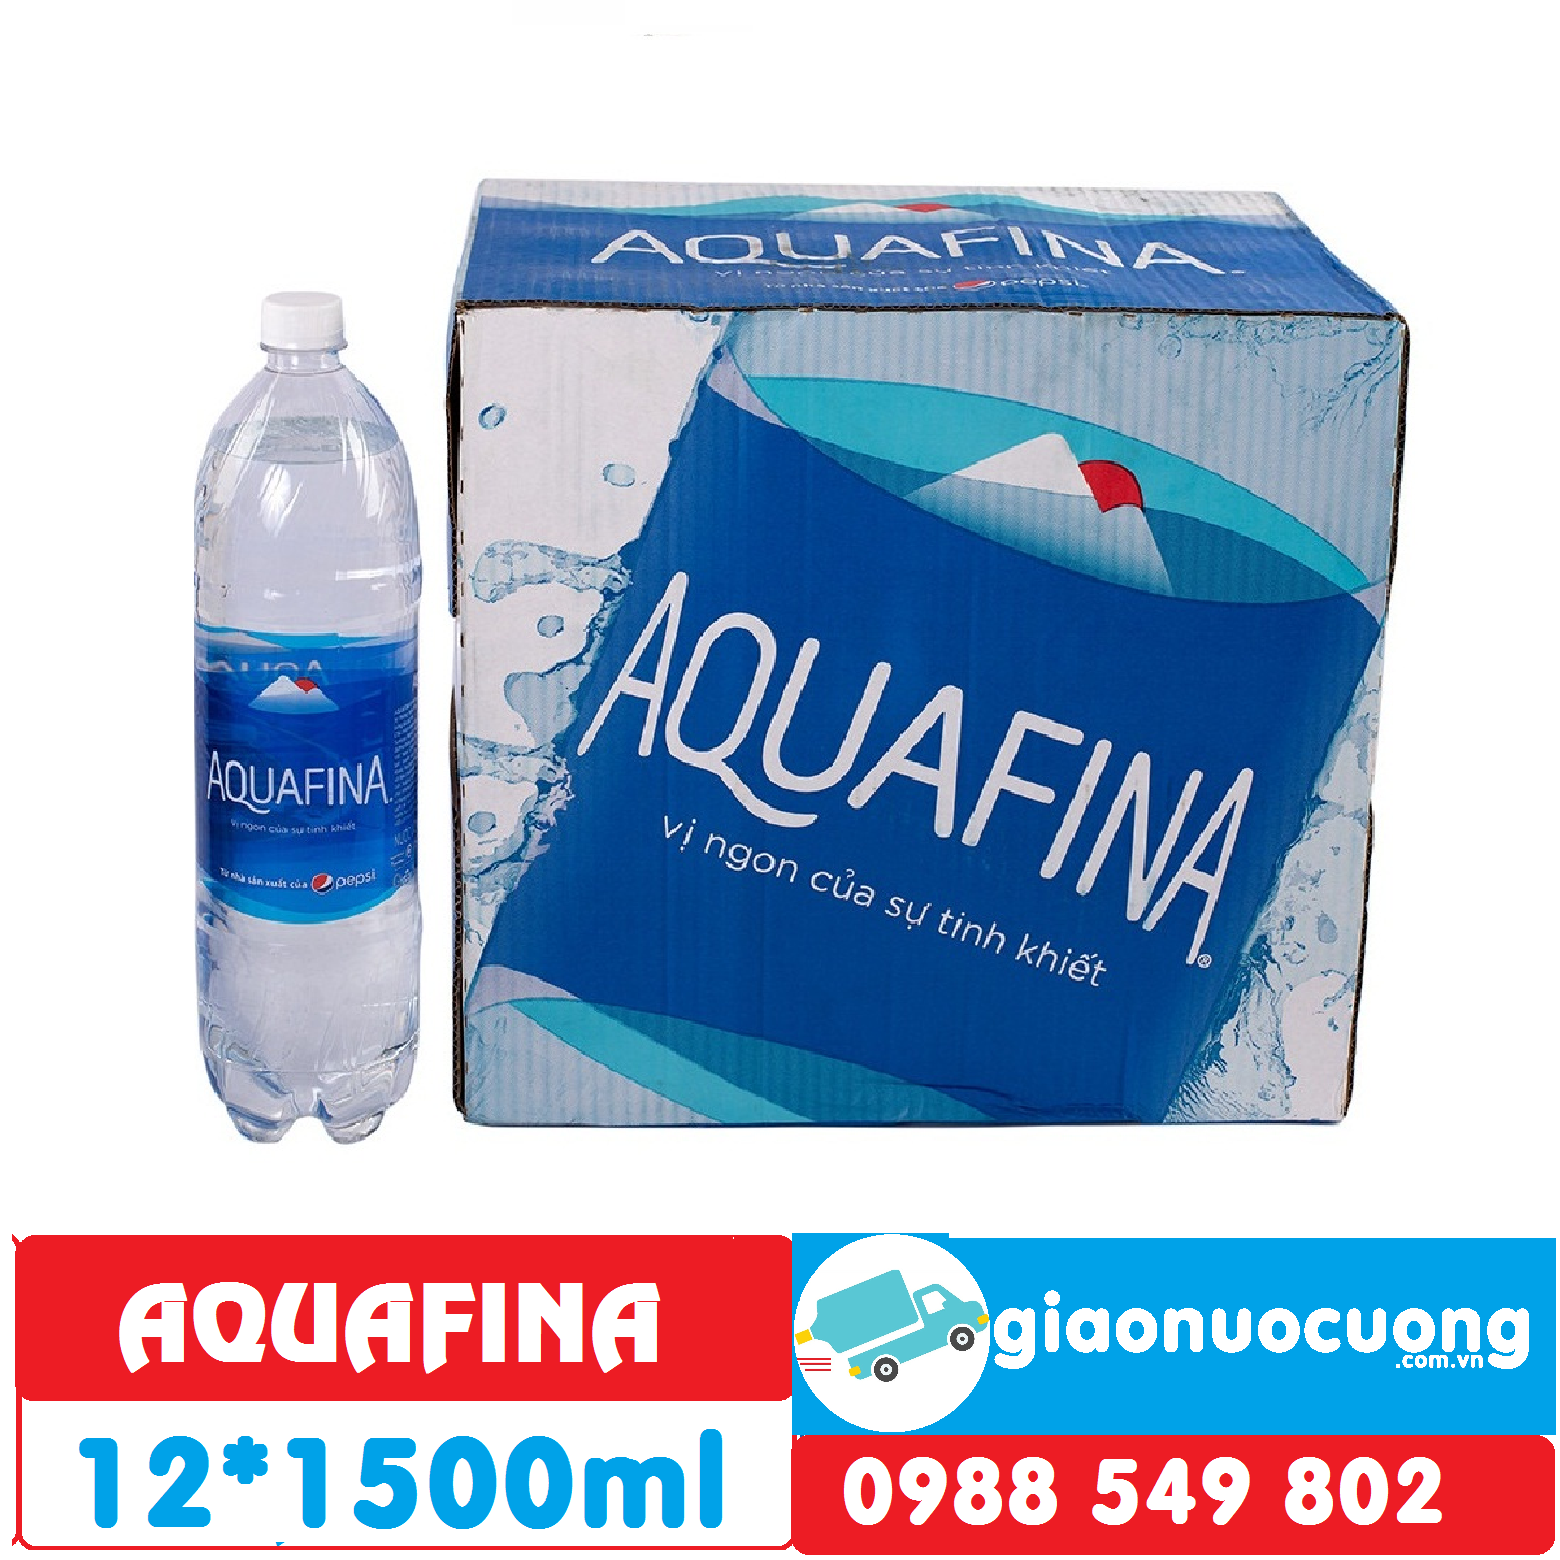 aquafina 1500ml